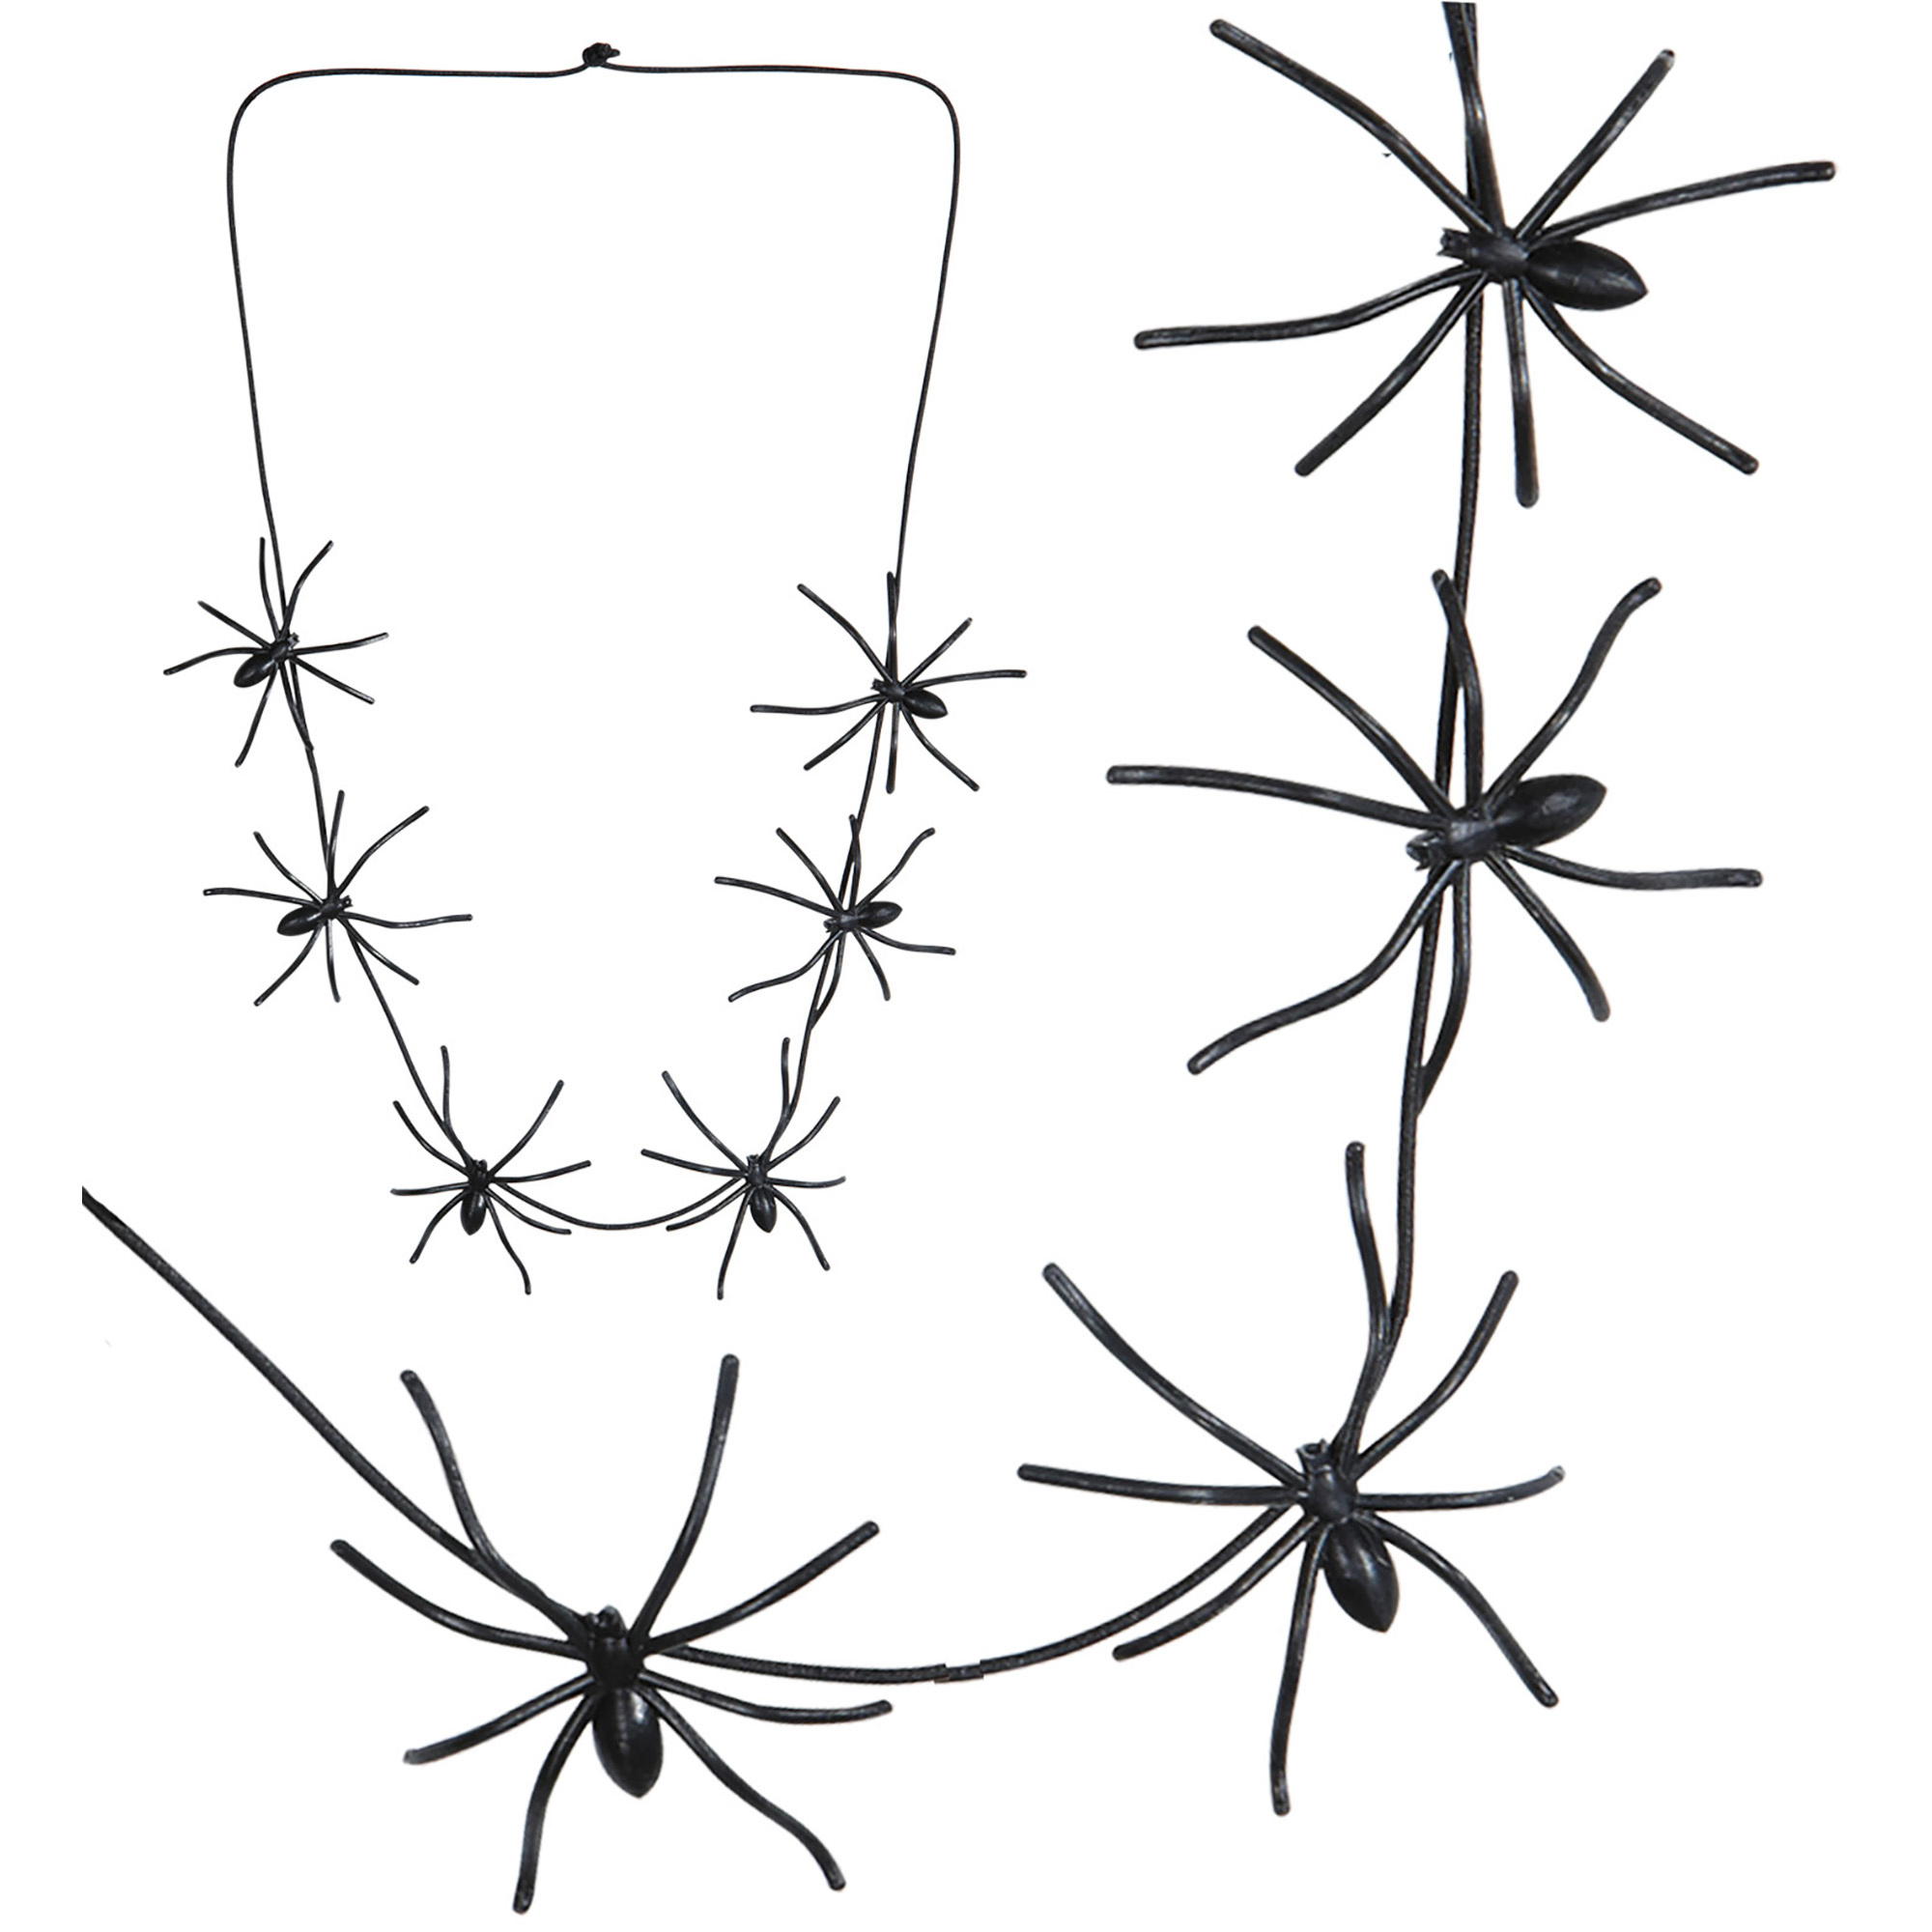 Accessoires voor Halloween spinnen ketting 60cm